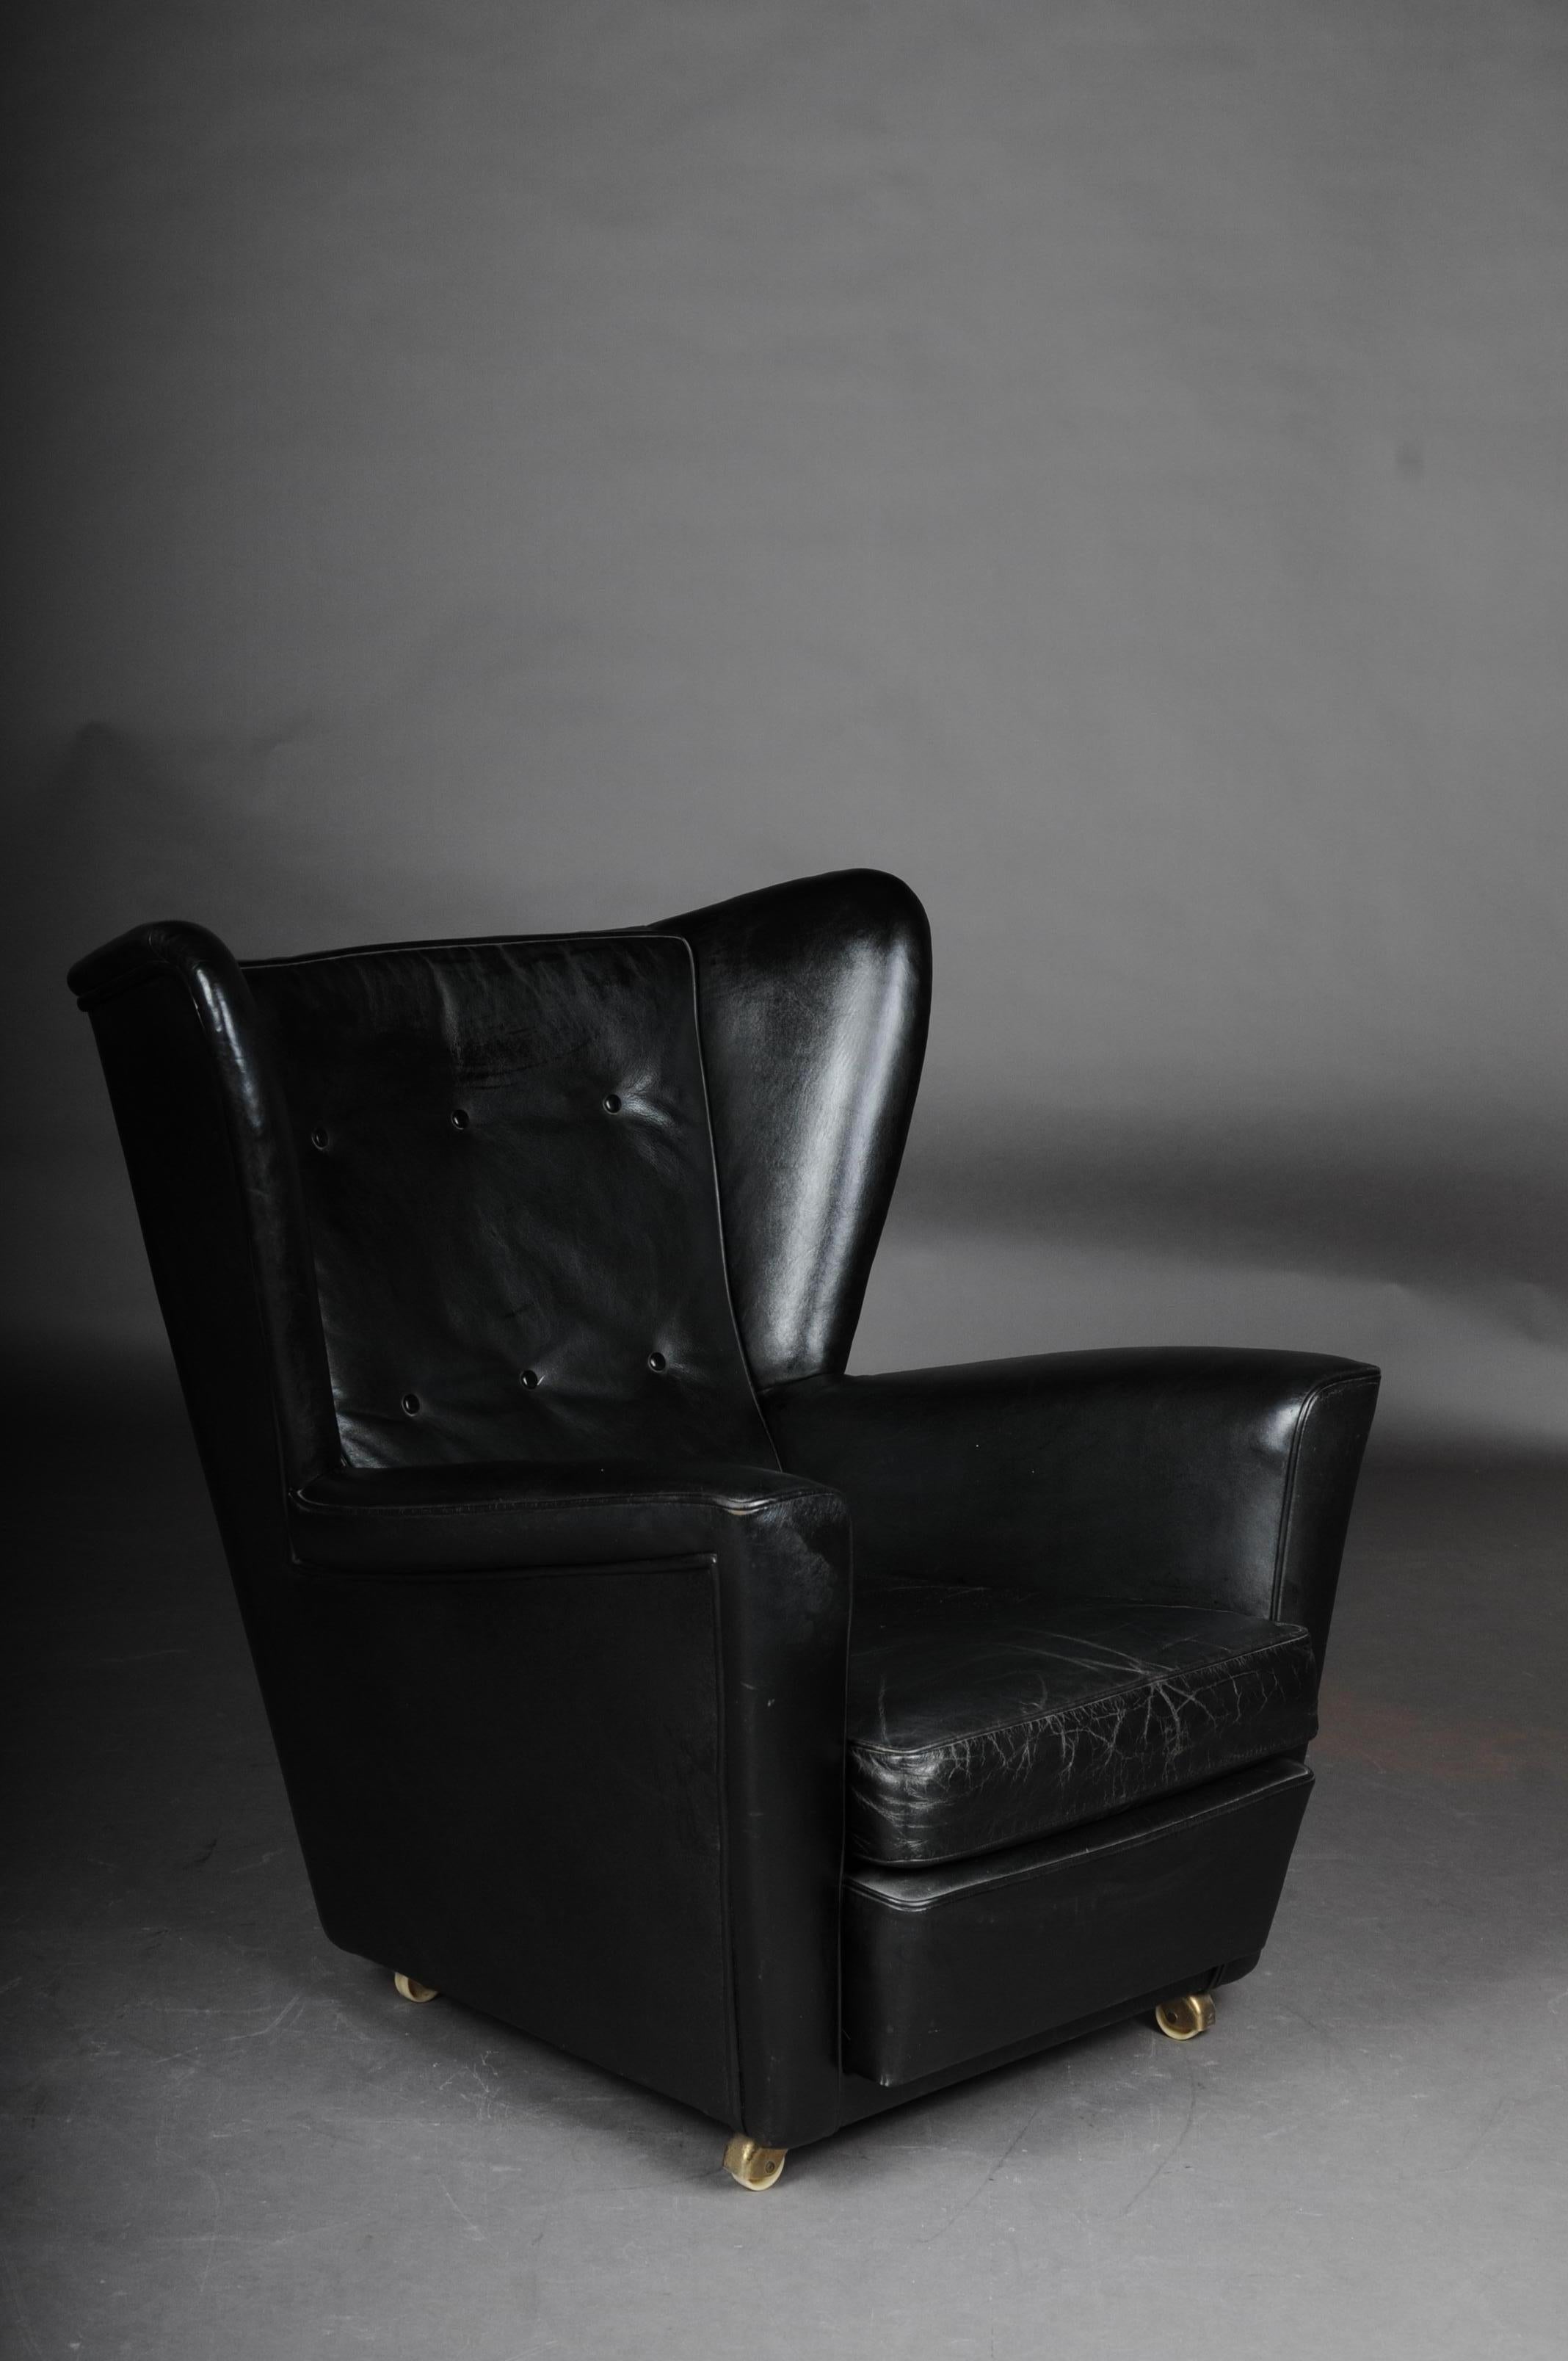 Vintage Club-Sessel, gepolstert 1960-1970er Jahre Leder

Beschriftet aus London. Gepolsterter Volllederstuhl, Vintage 1960er-1970er Jahre. Der Polsterstuhl, der durch seine schlichte Eleganz überzeugt, ist ein Blickfang in jedem Interieur. Ein